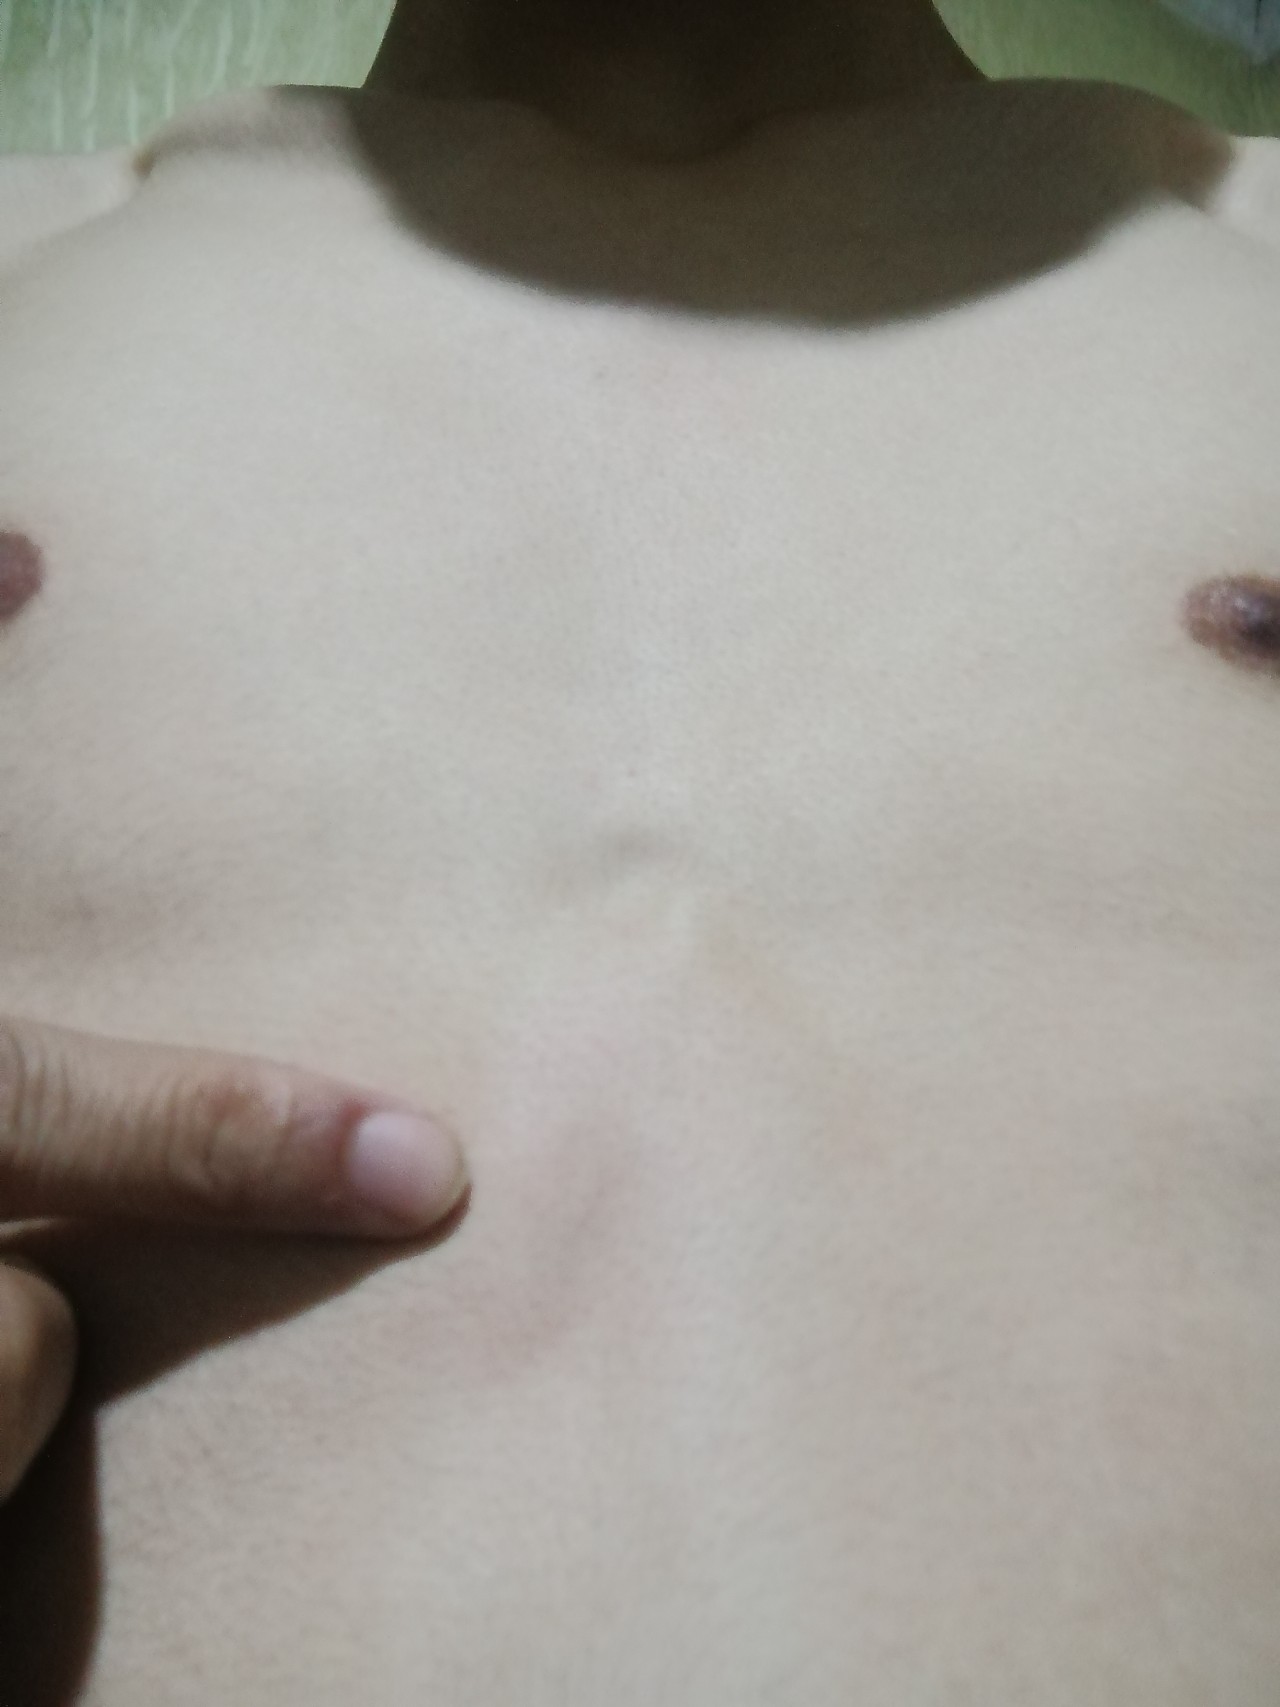 уплотнение в груди у женщин причины фото 70